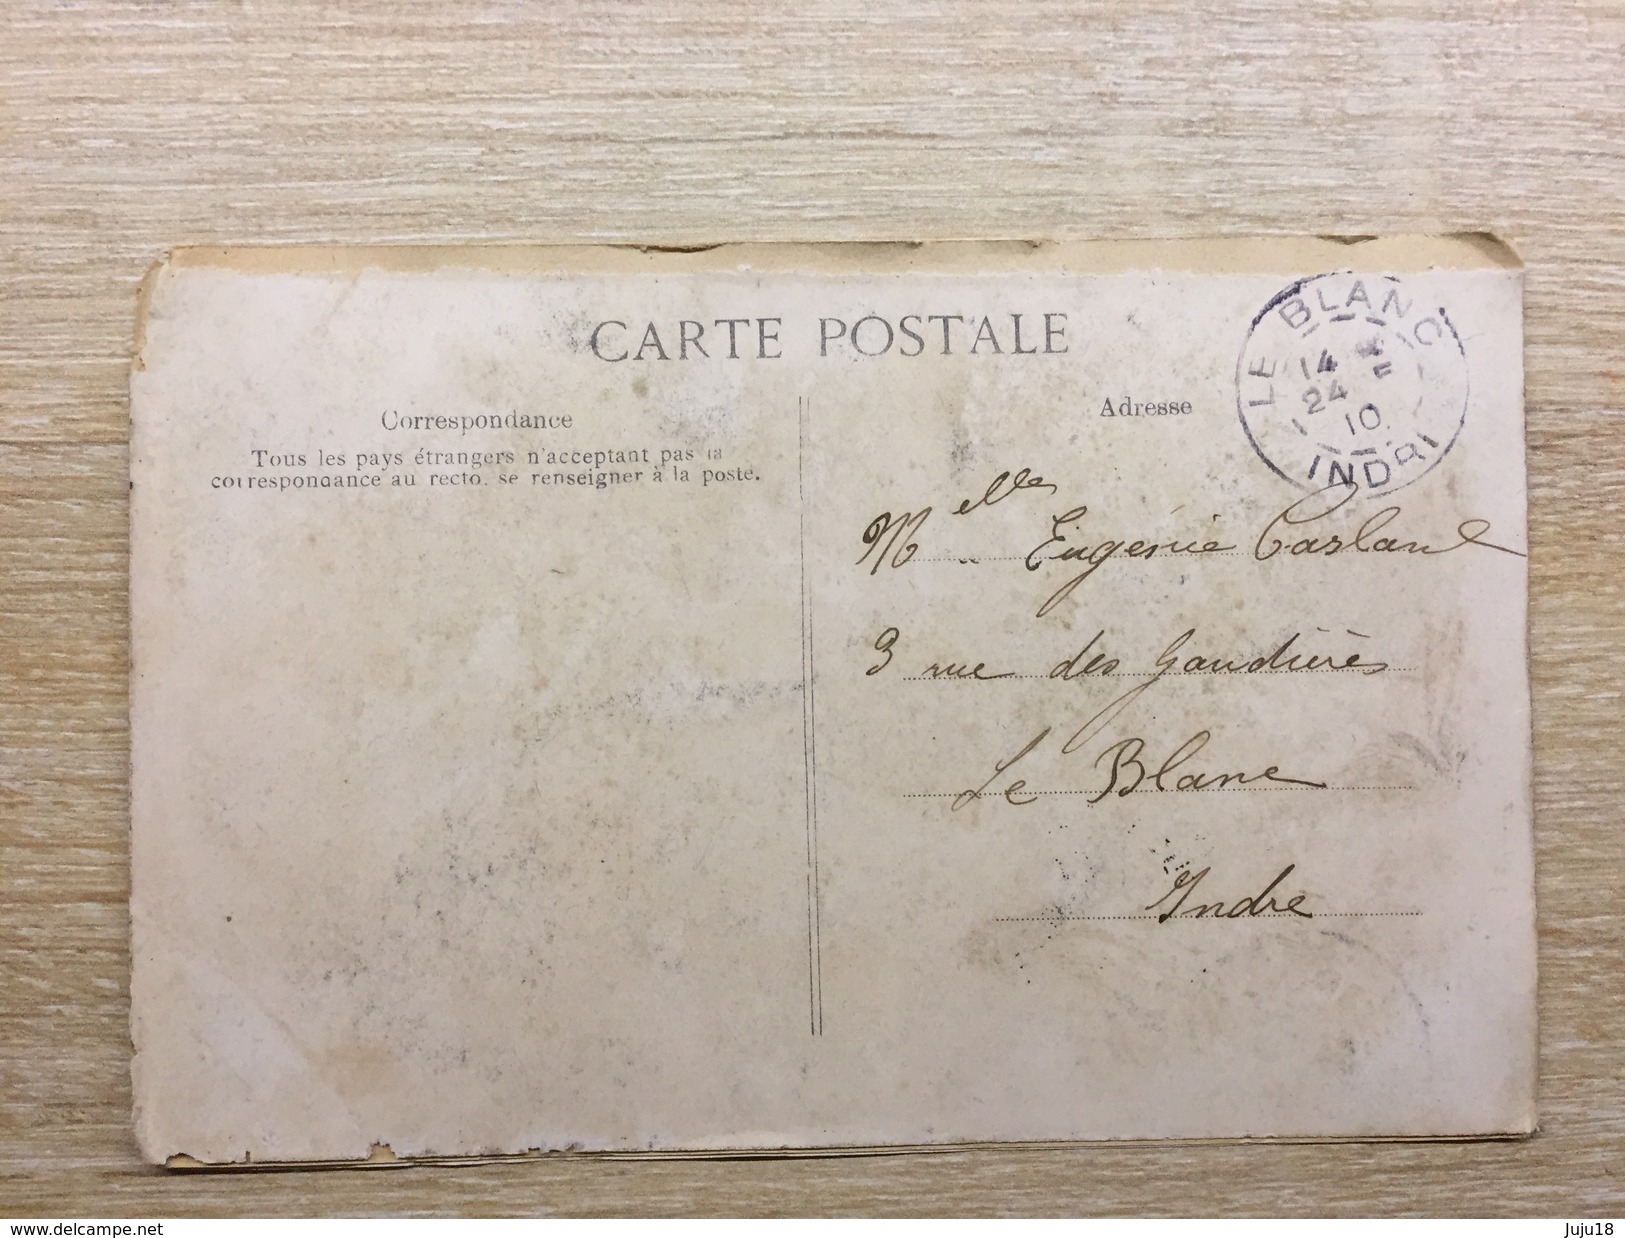 Carte Postale Fin Du Monde 1910 - Humour